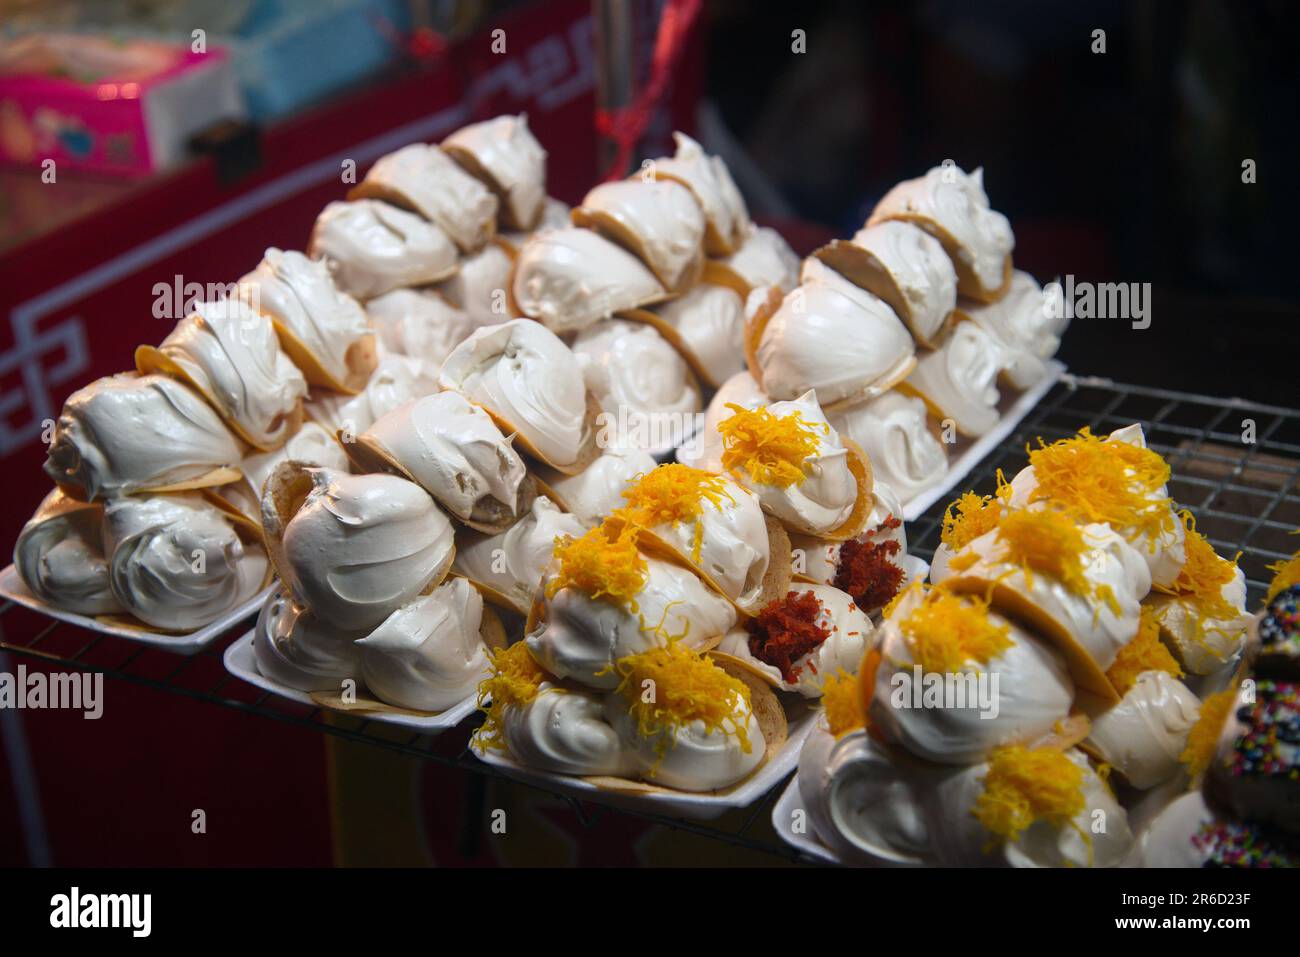 Kanom Bueng ou crêpes thaïlandaises avec diverses garnitures telles que crème anglaise, crème blanche sucrée fils de jaune d'œuf ou crevettes hachées salées sur la poêle. Banque D'Images